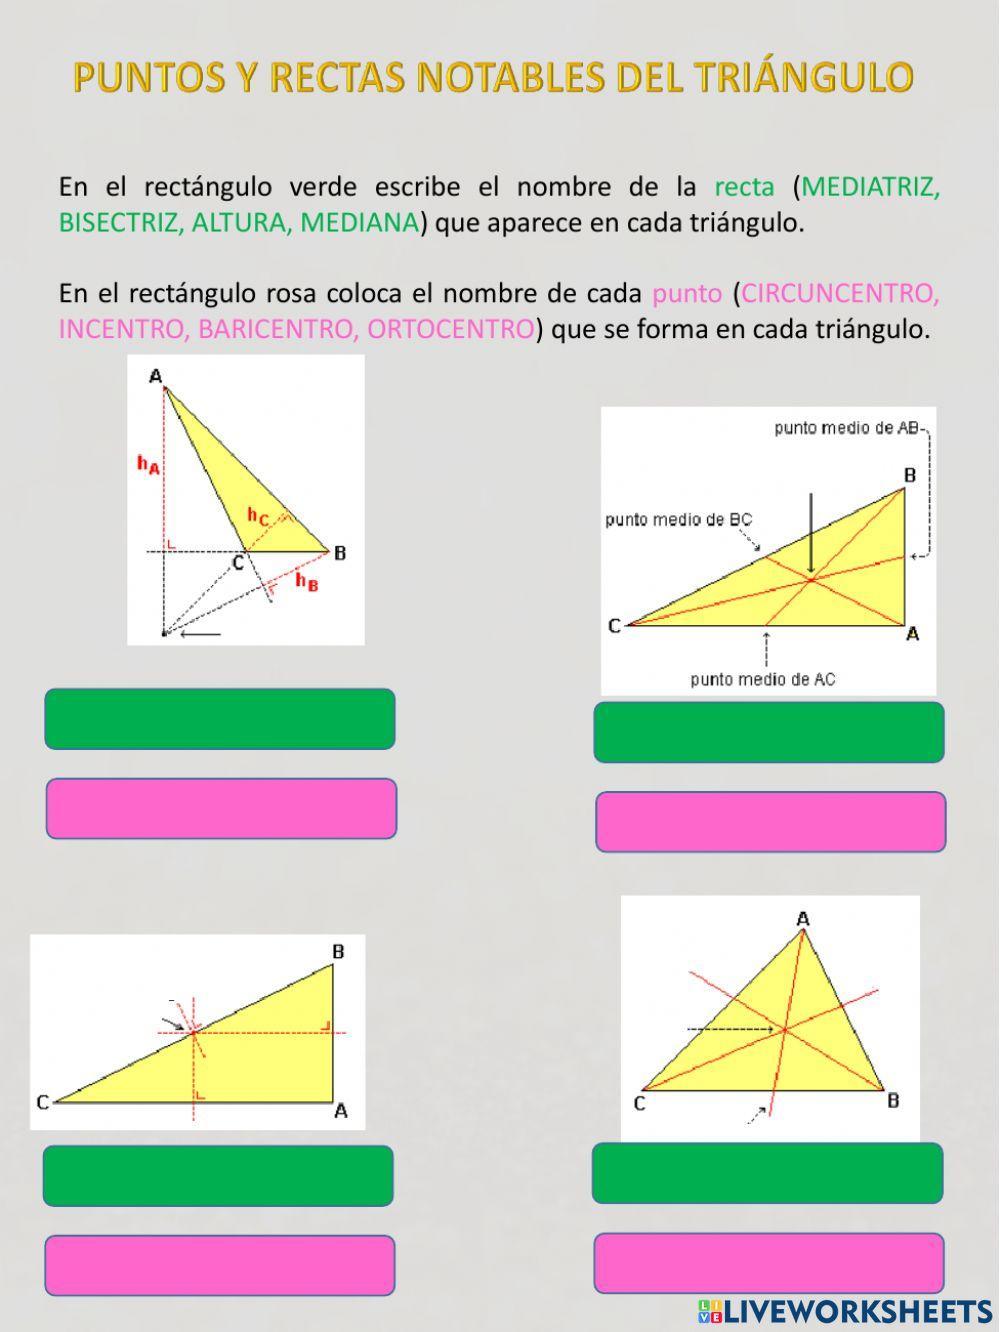 Puntos y rectas NOTABLES en el triángulo